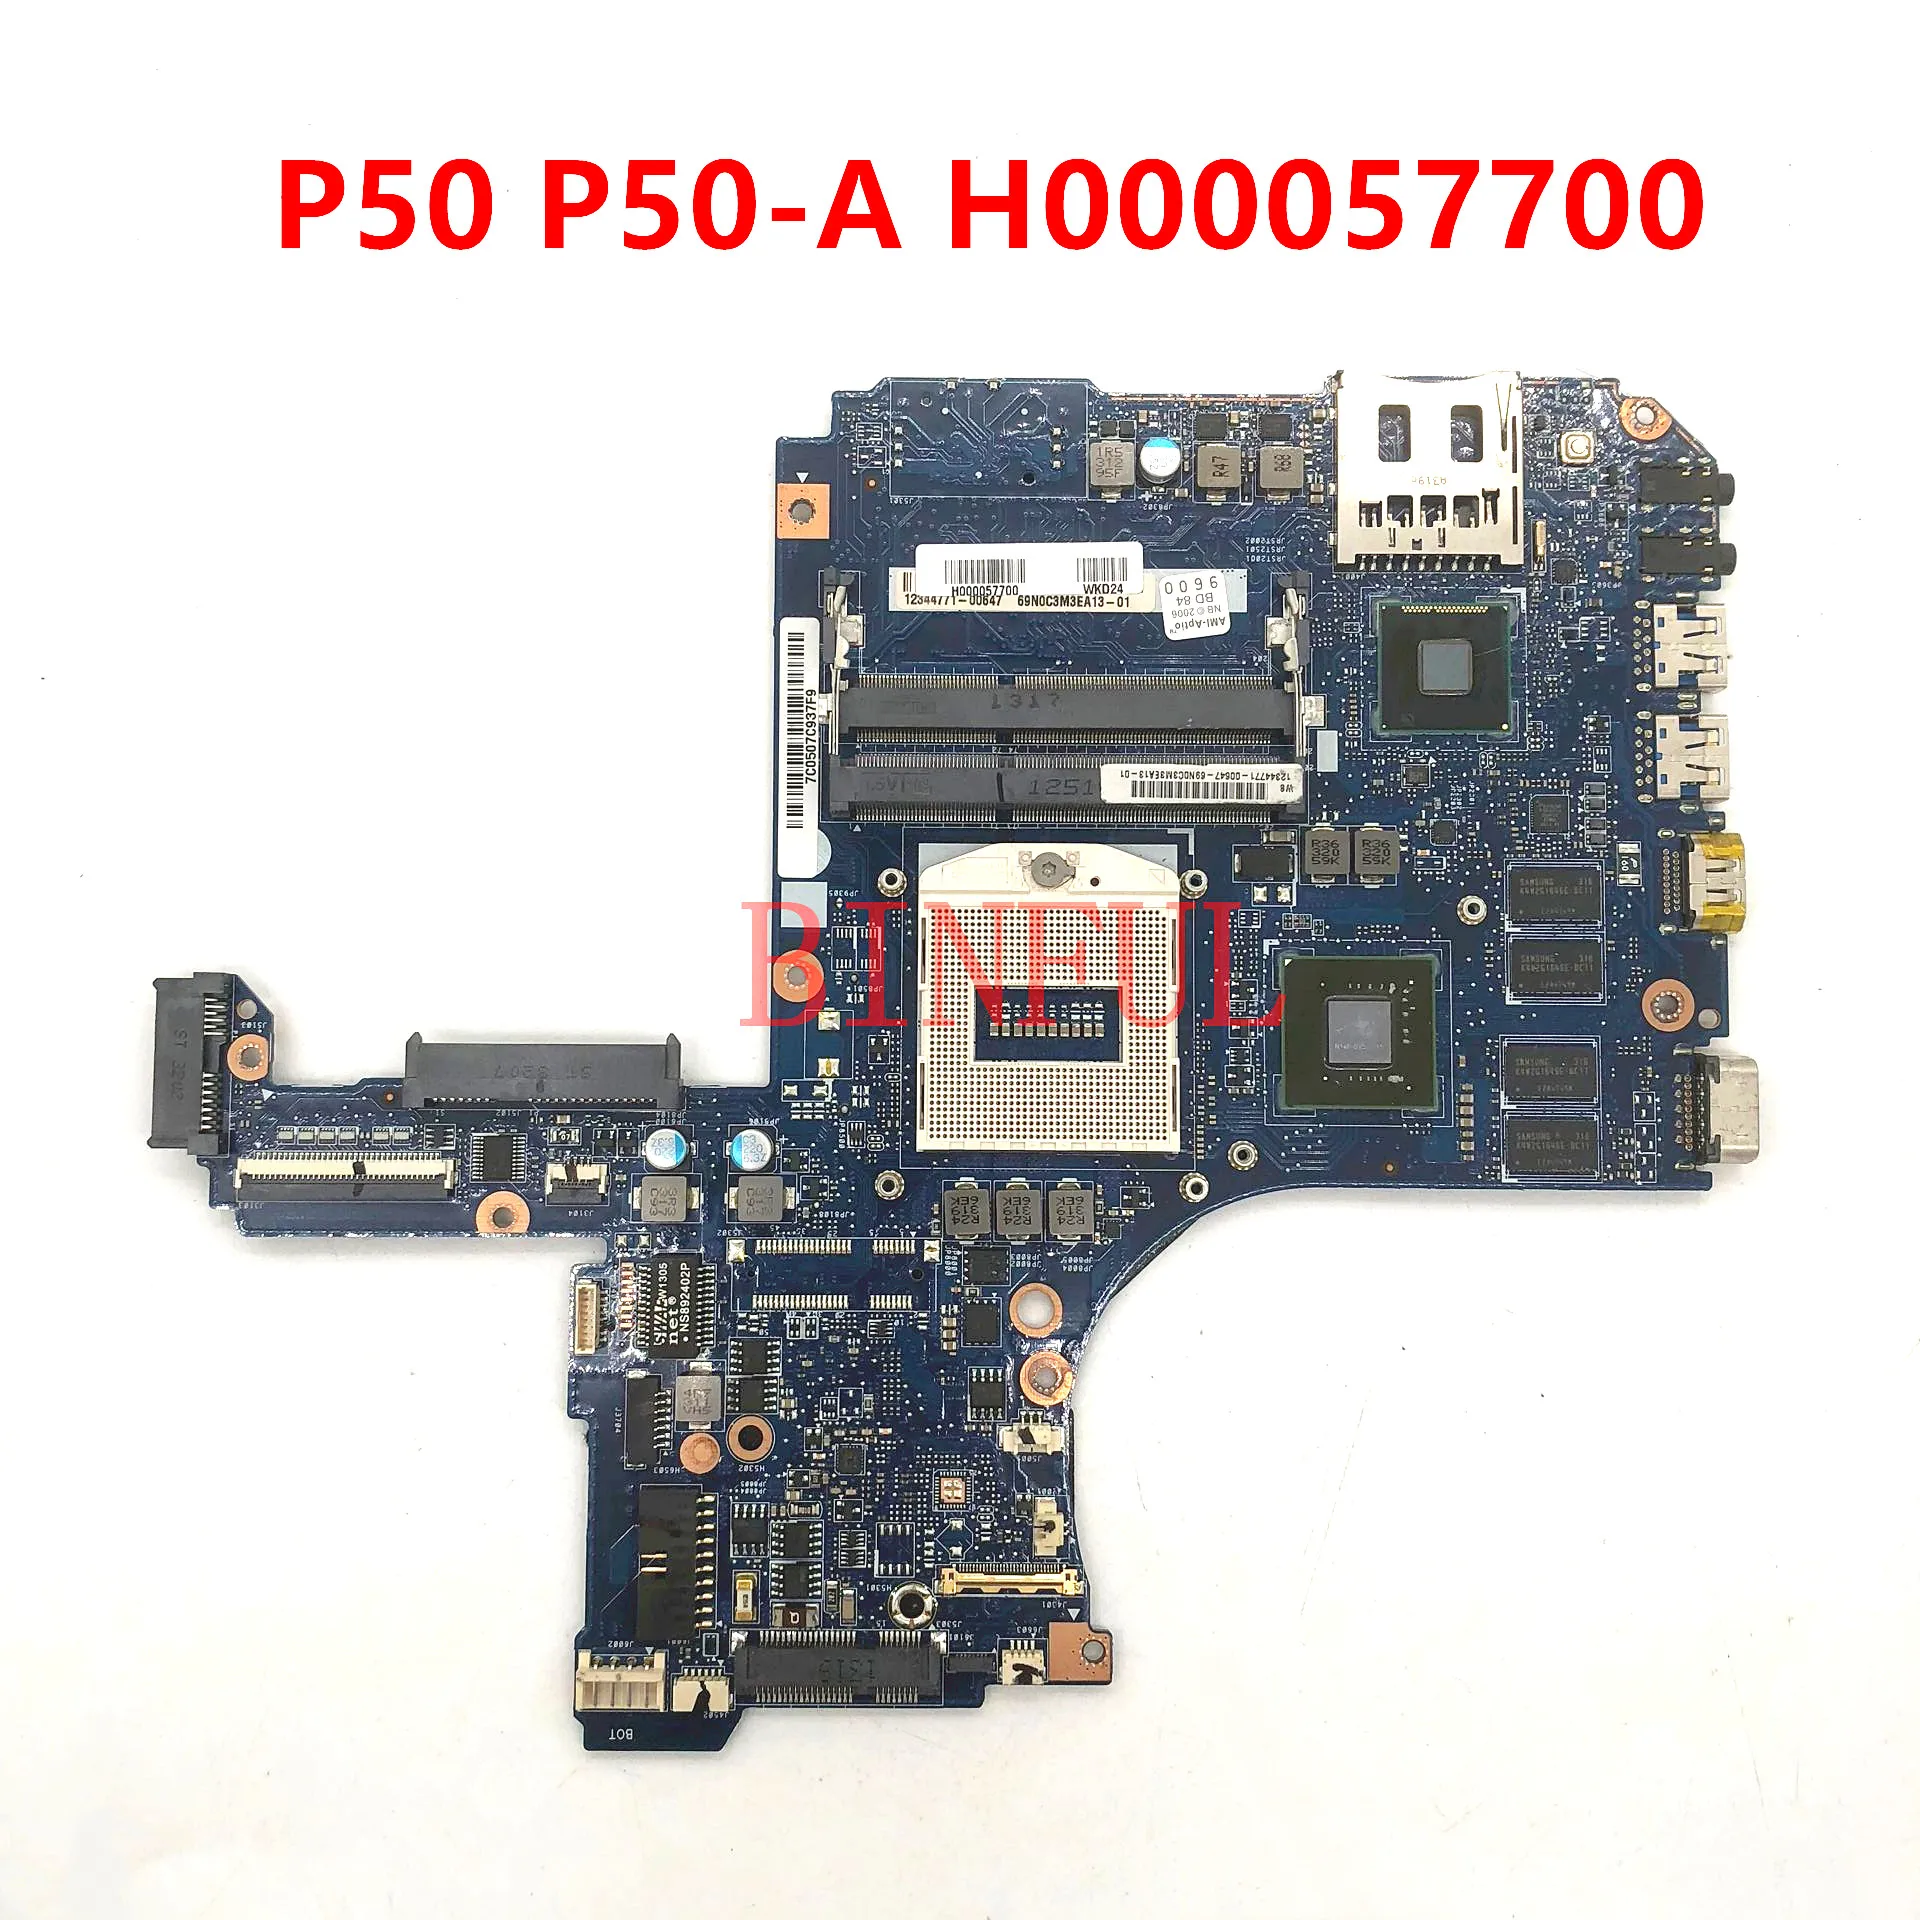 

Высококачественная материнская плата для ноутбука Toshiba Satellite P50 P50-A H000057700, материнская плата HM86 GT740M GPU DDR3L 100%, полностью протестирована